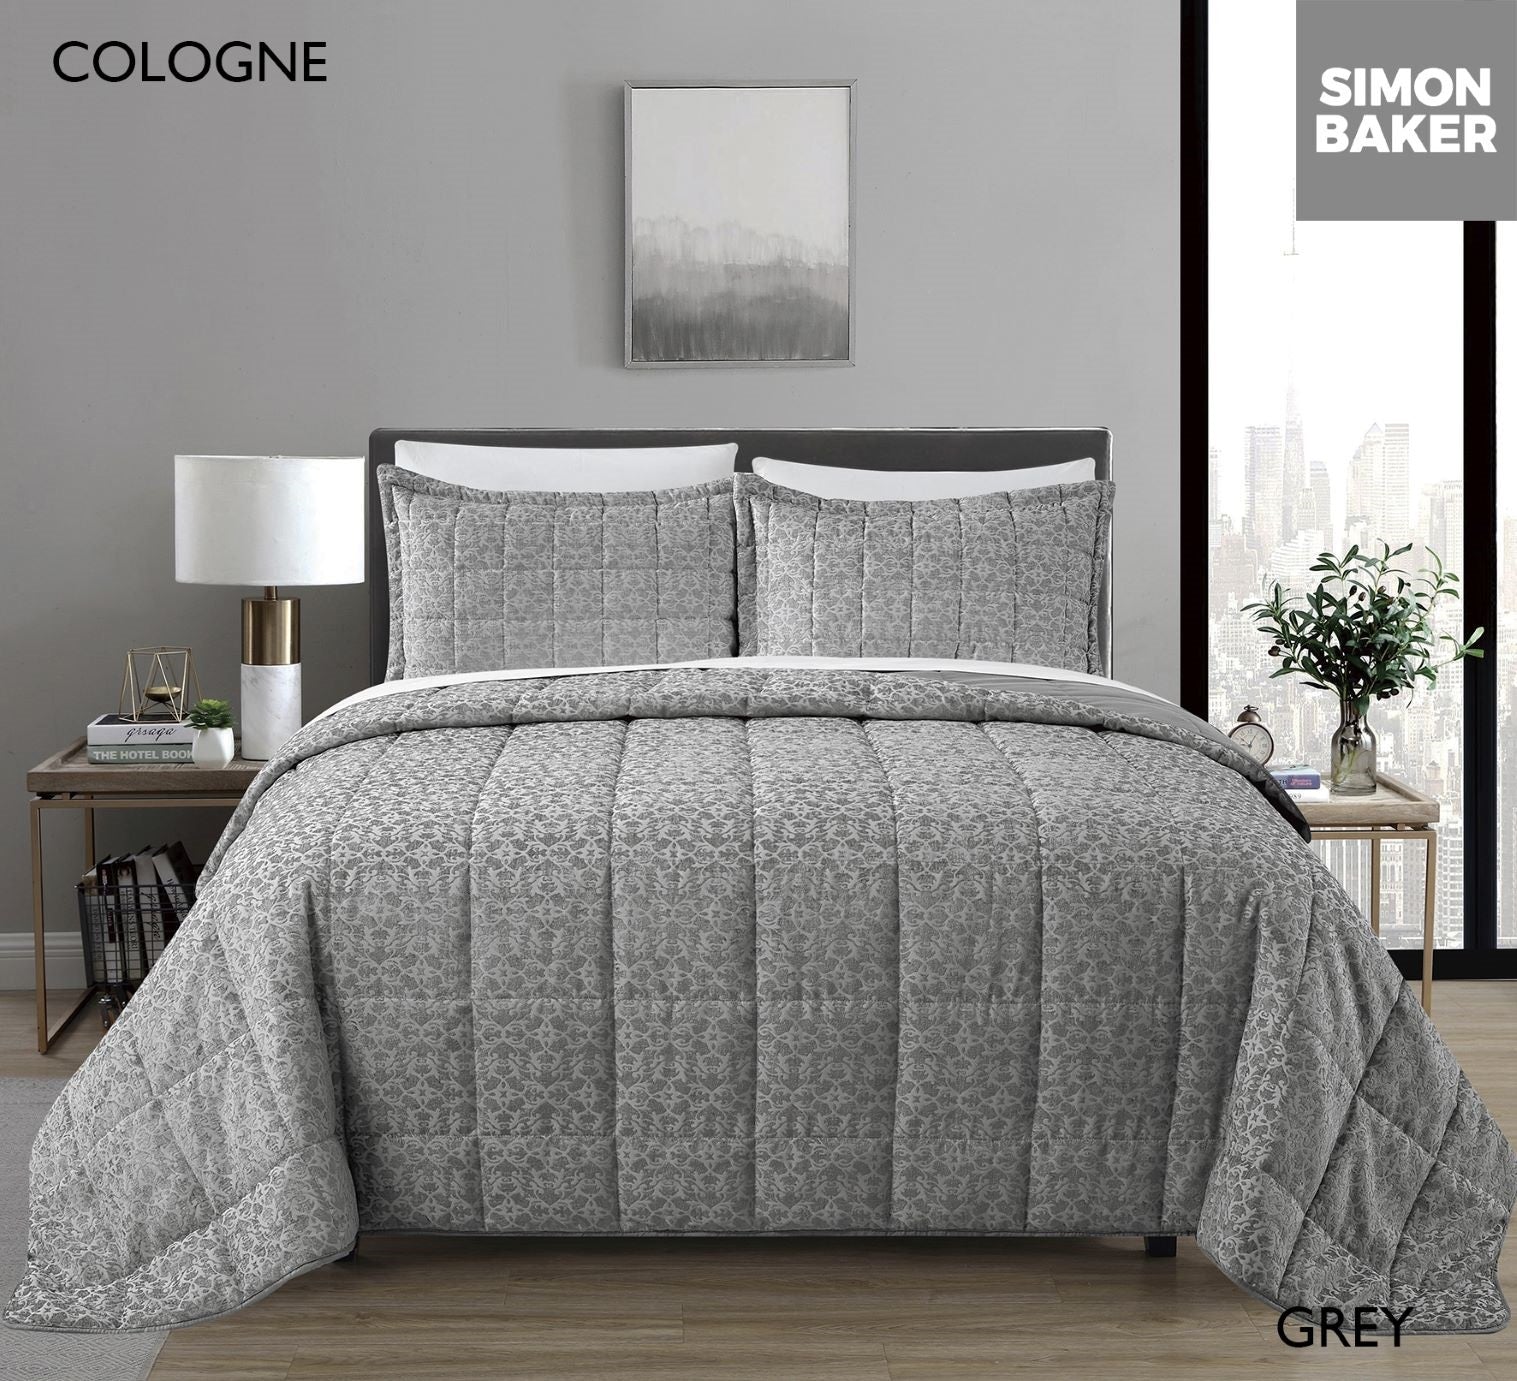 Cologne Comforter Set